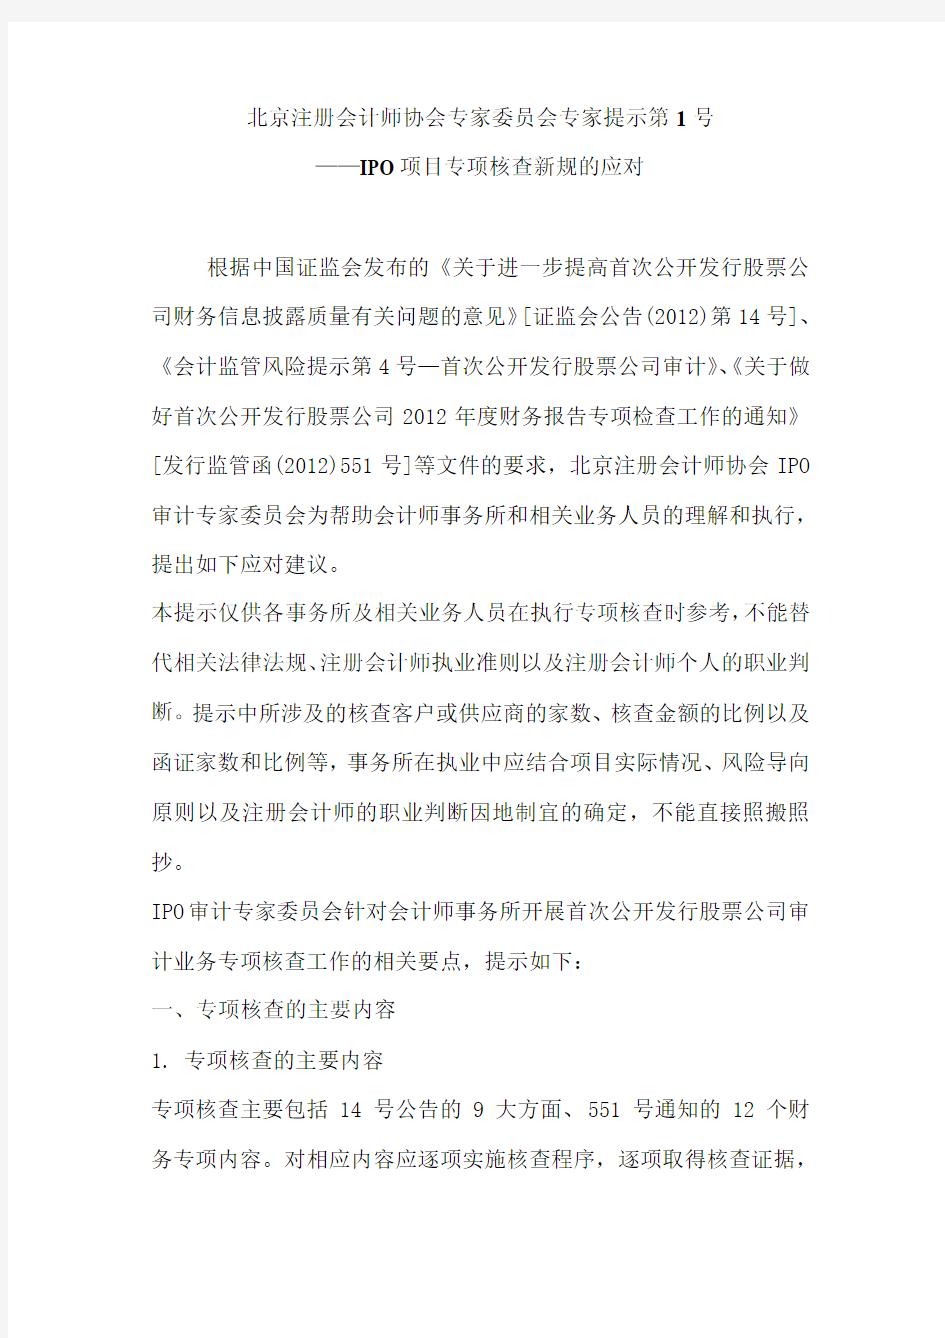 北京注册会计师协会专家委员会专家提示第1号